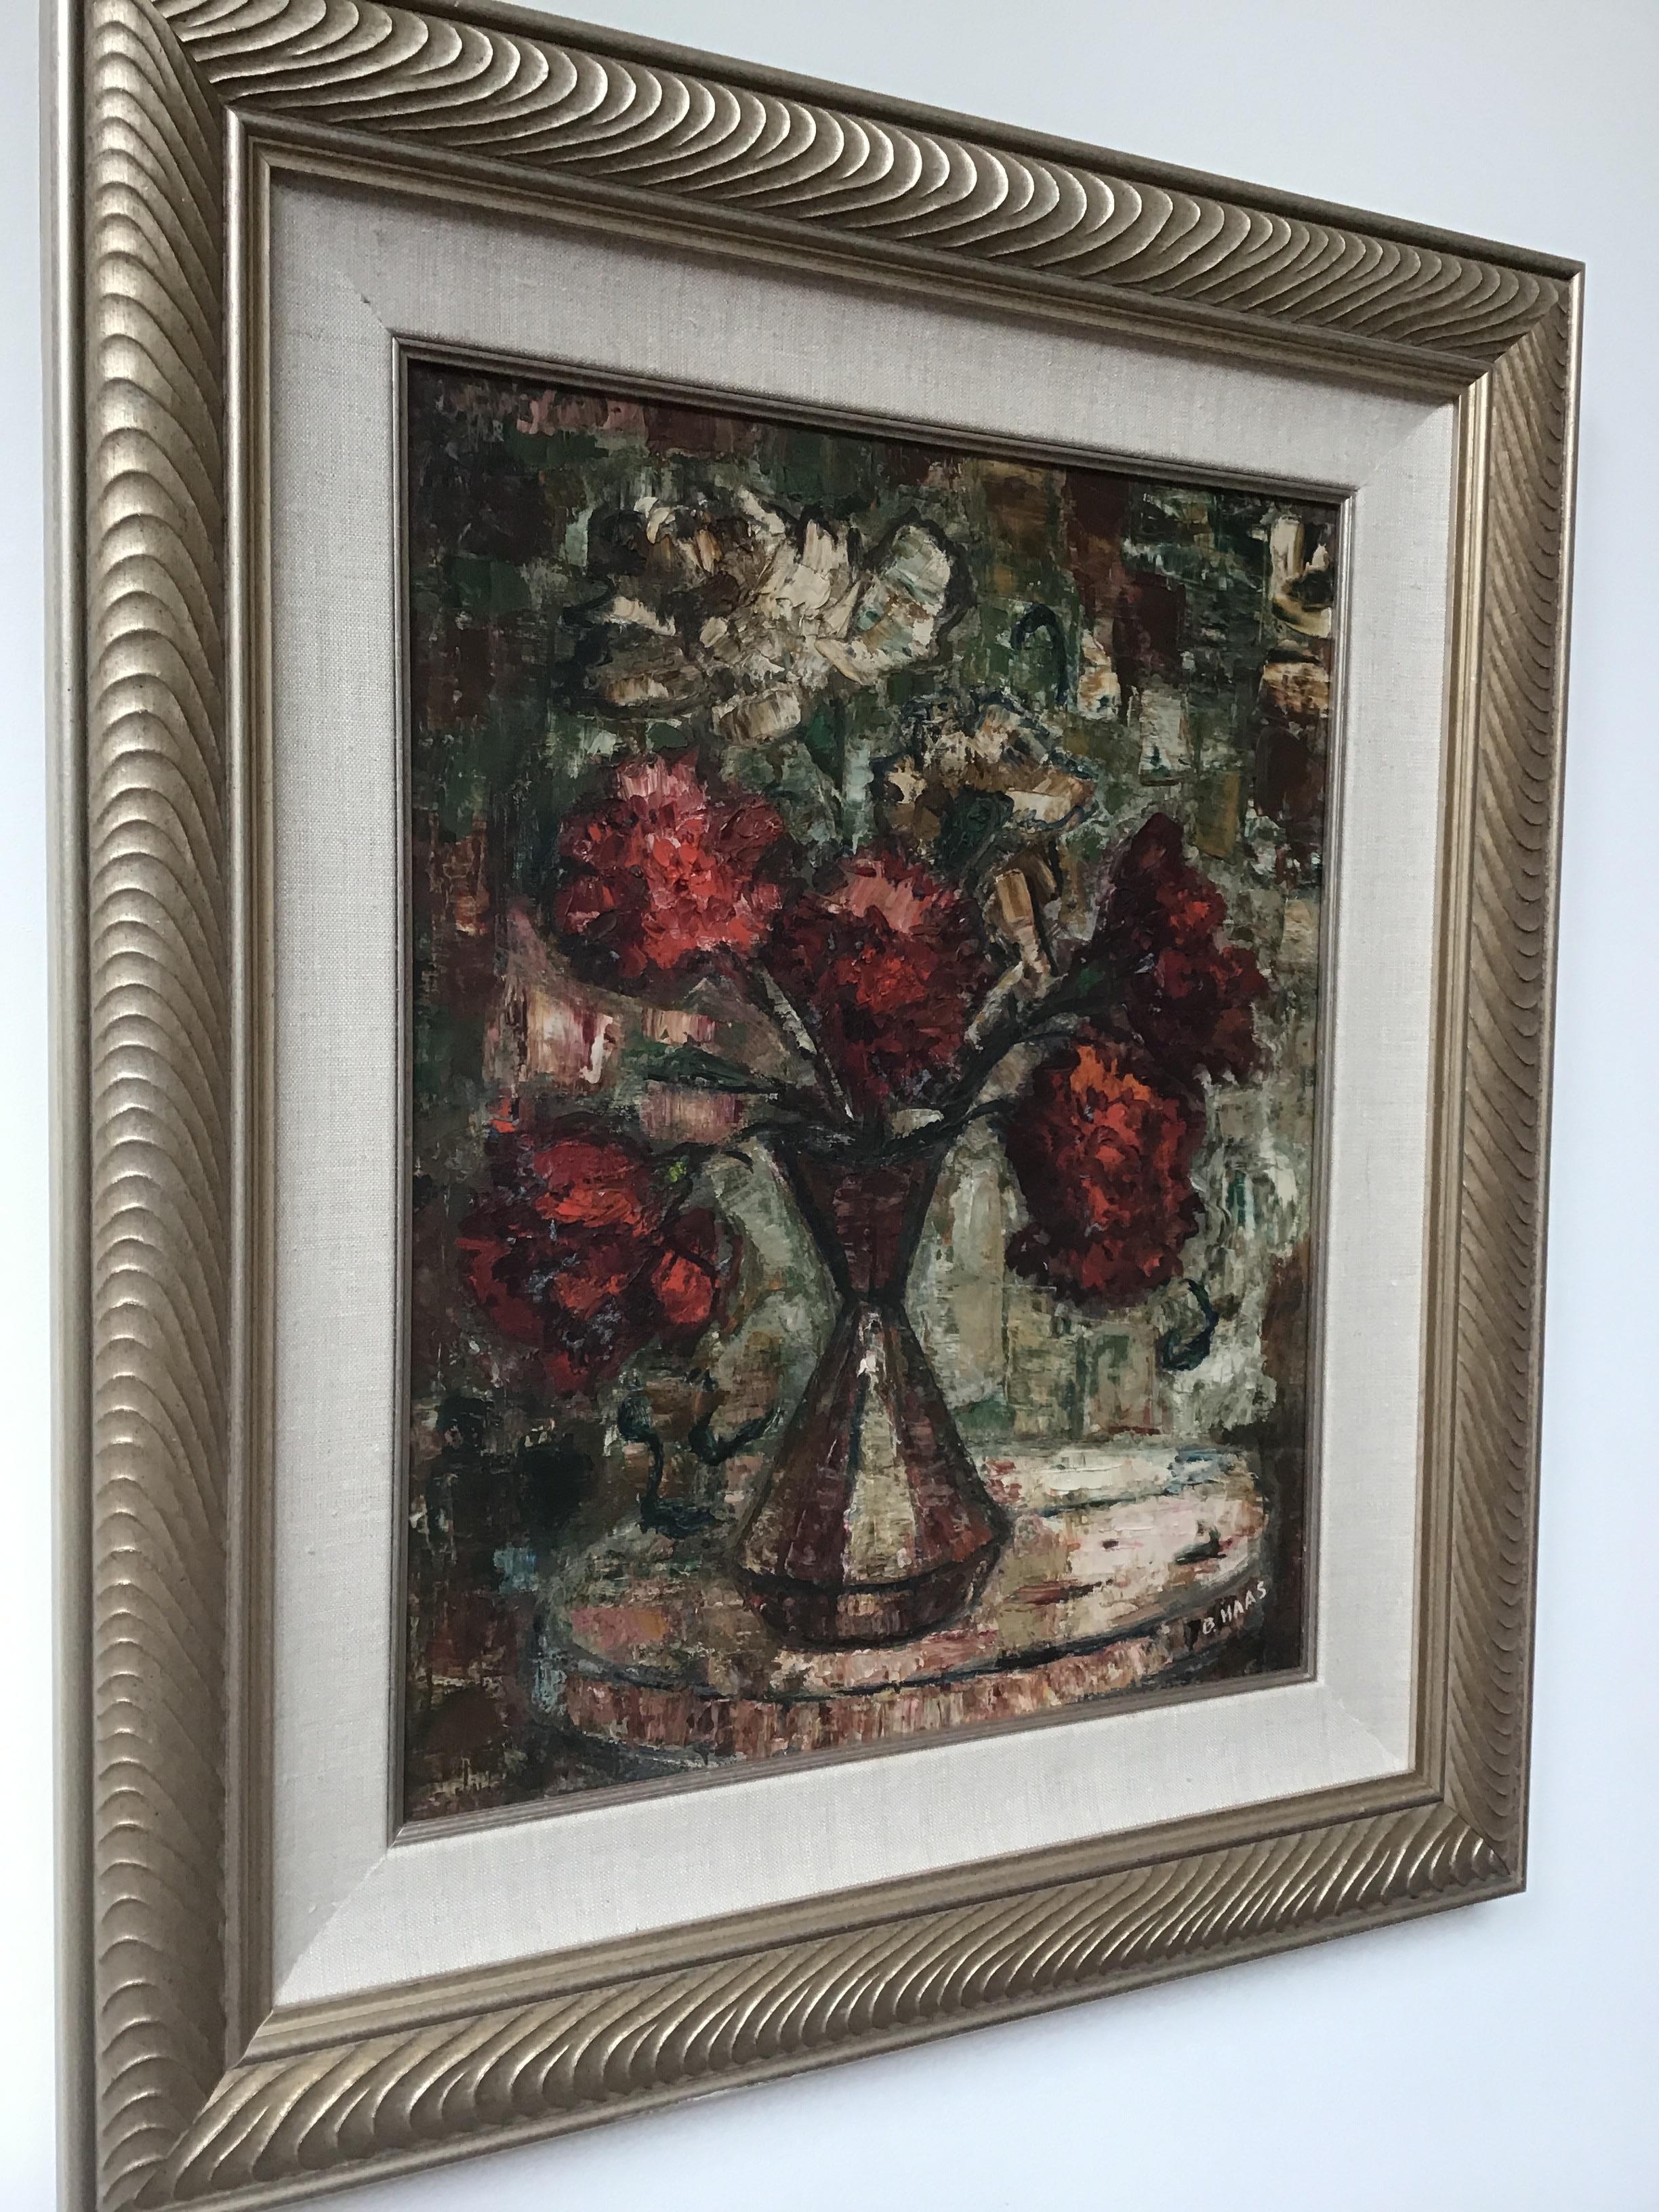 Huile sur toile des années 1990 représentant un arrangement floral par B. Haas.